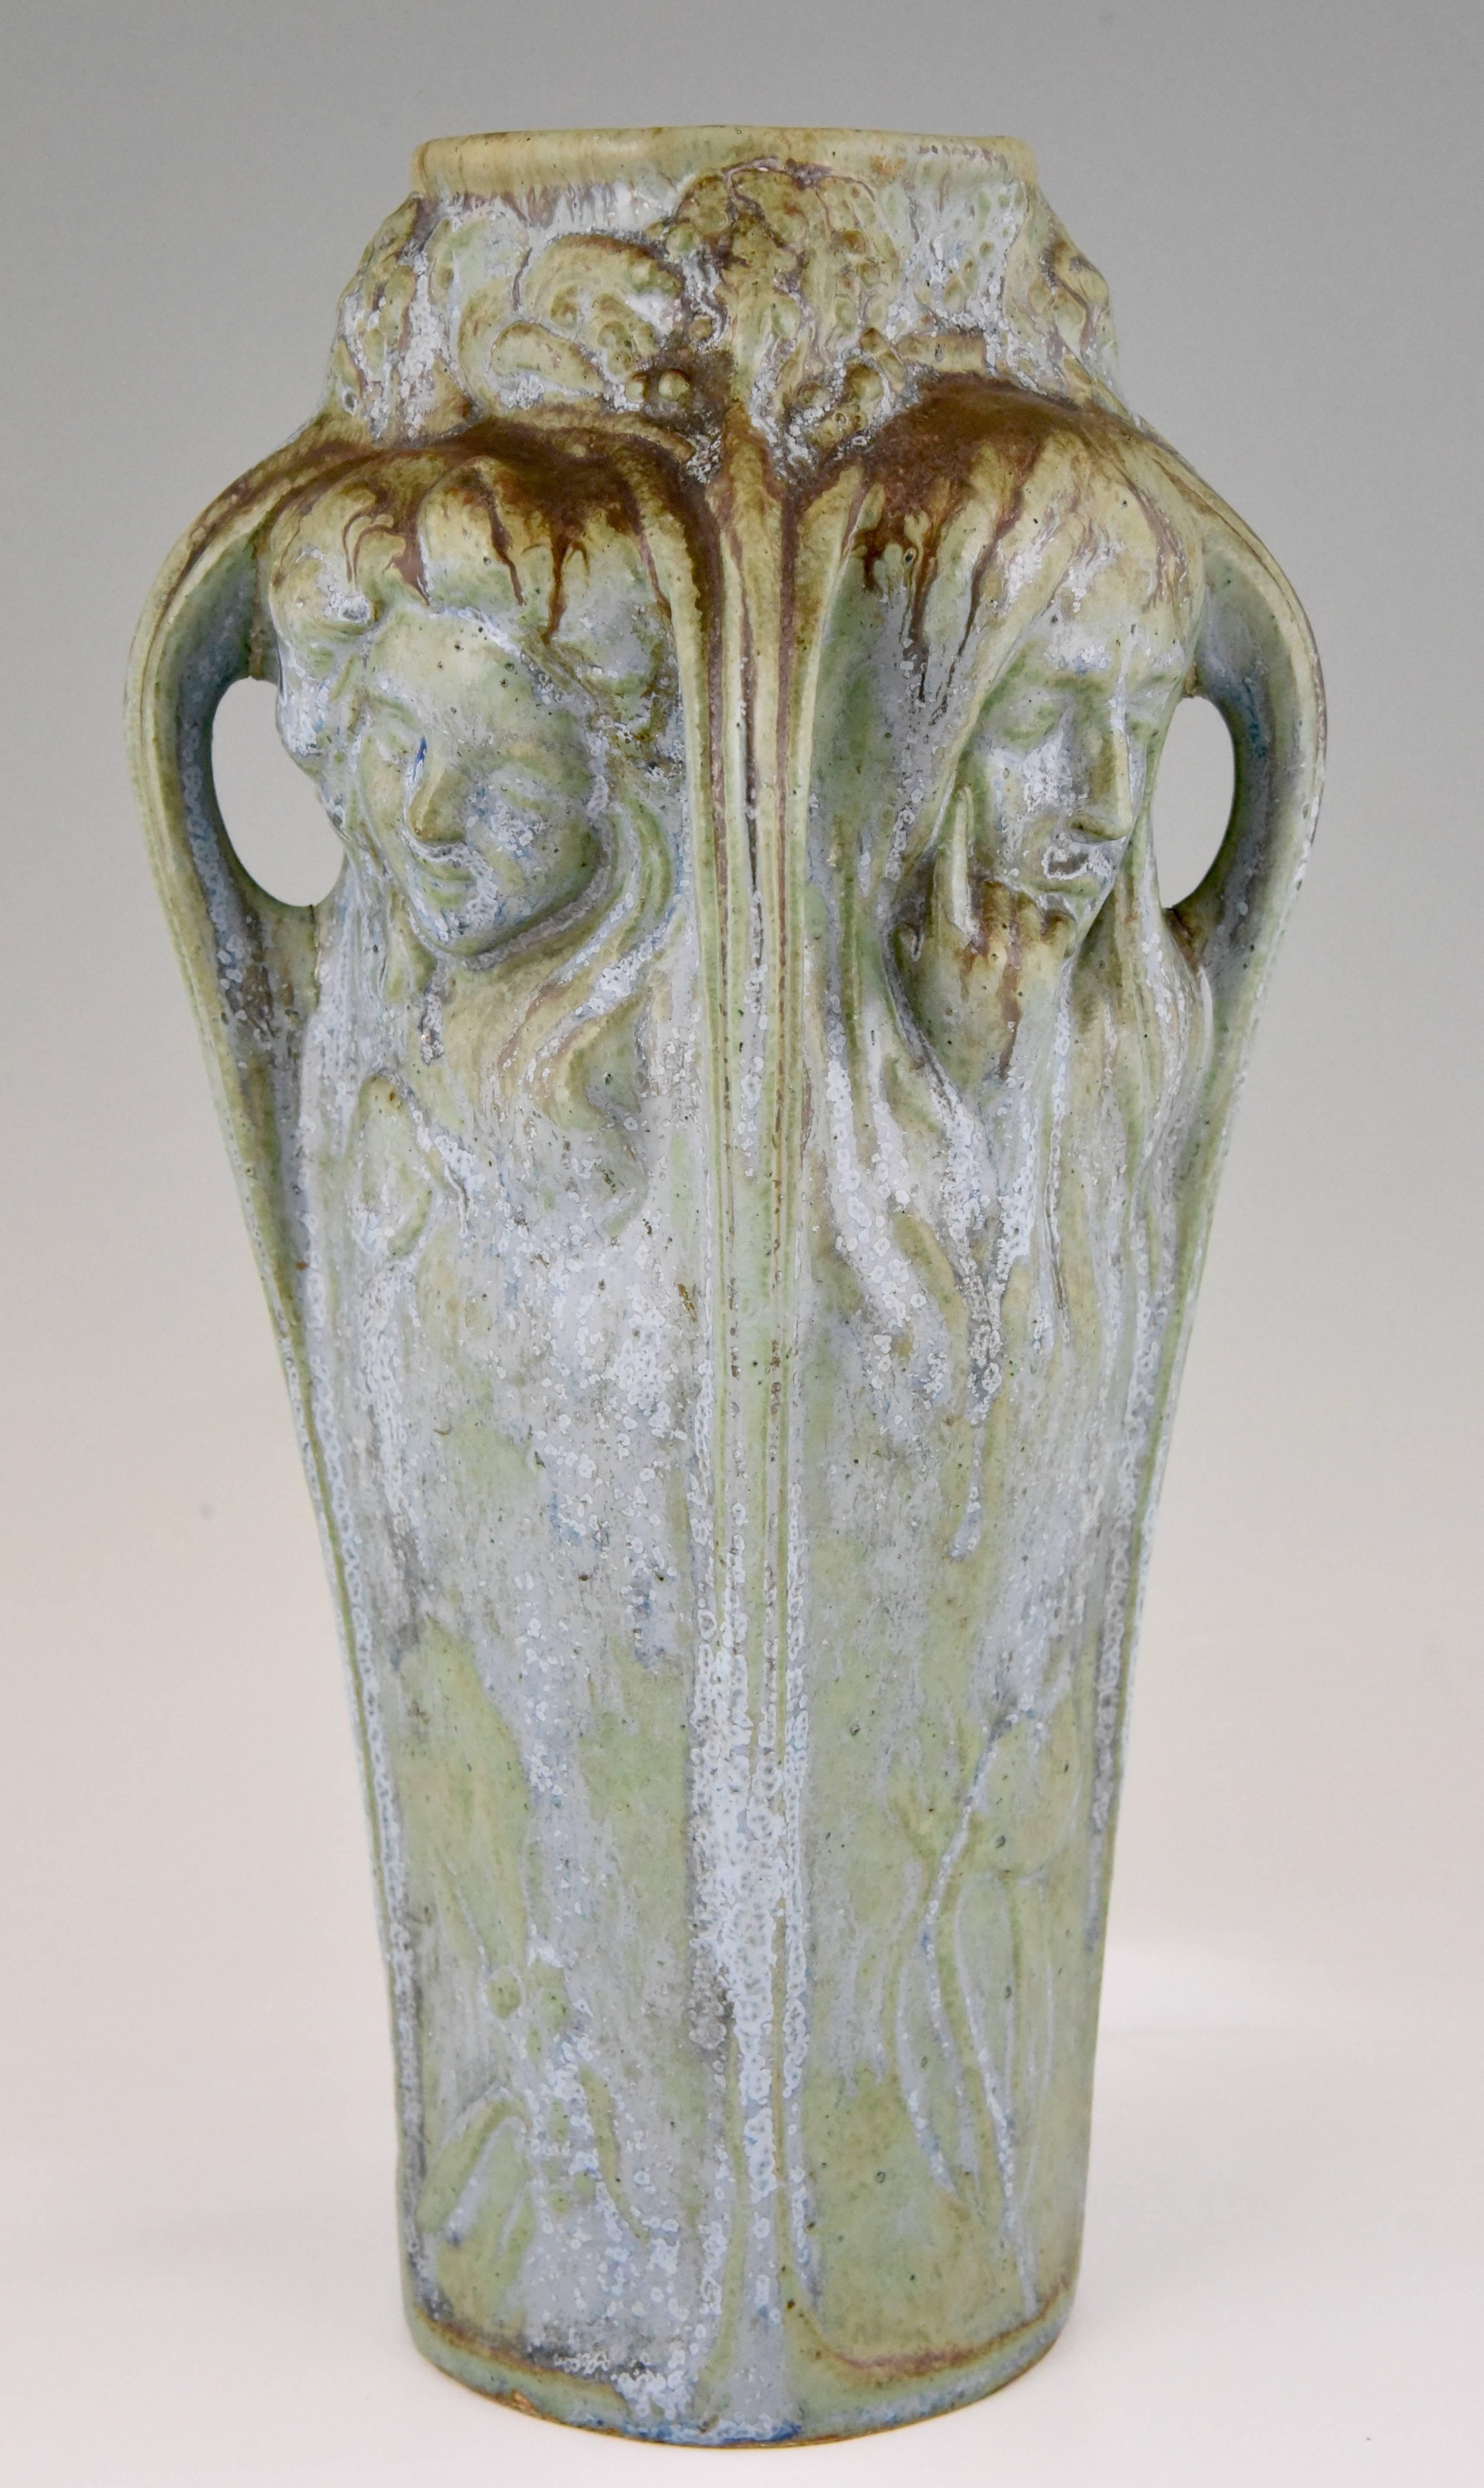 Early 20th Century Art Nouveau Vase Four Women's Faces Four Seasons Michelet for Gentil & Bourdet